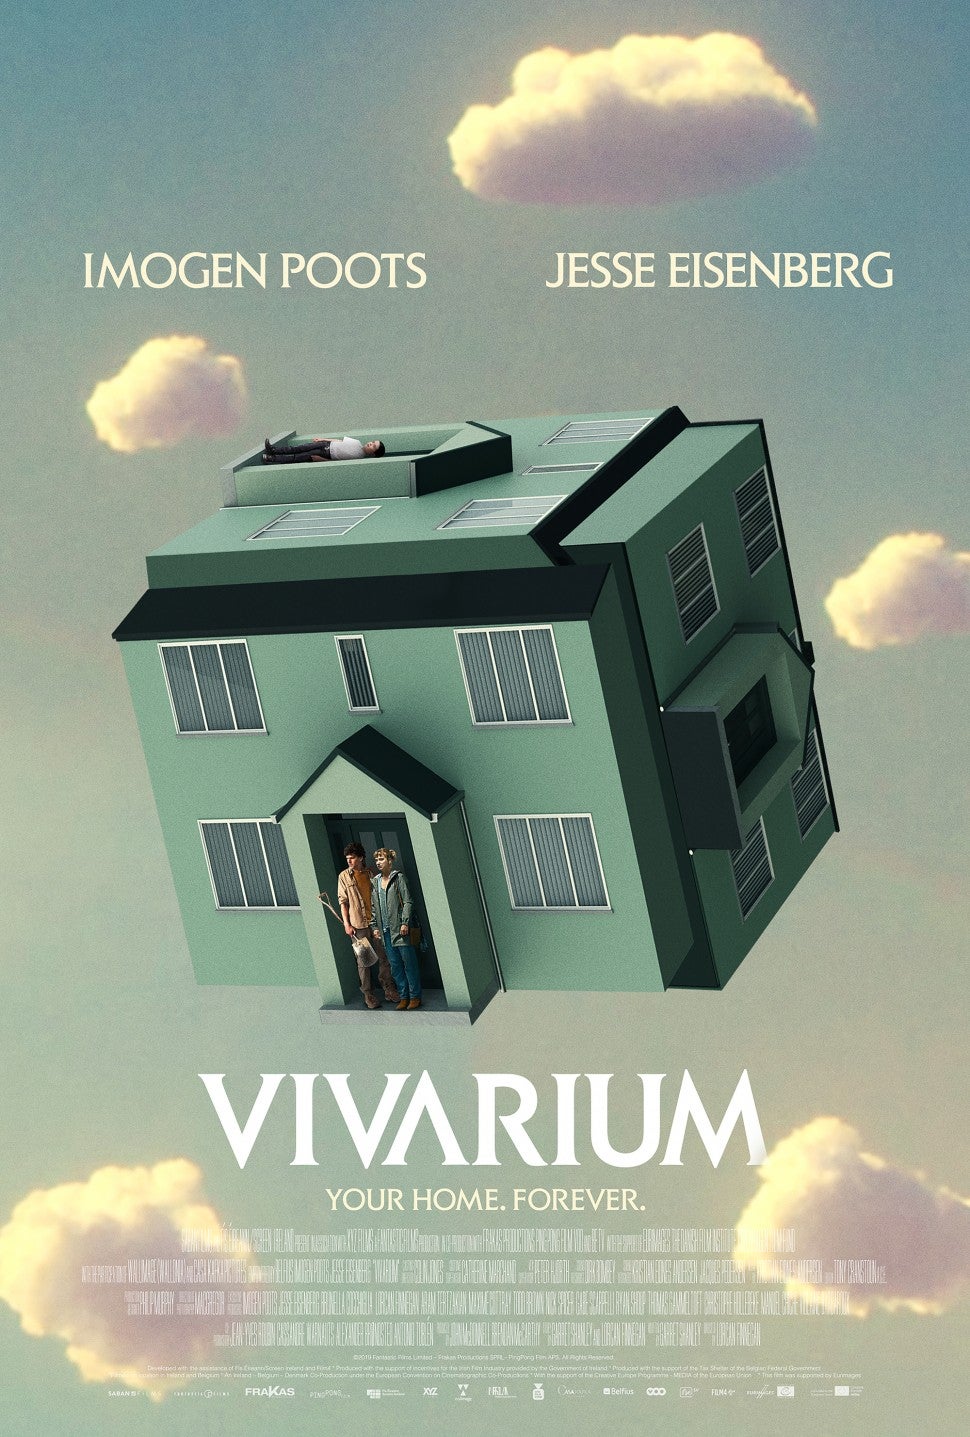 Vivarium, Jesse Eisenberg, Imogen Poots